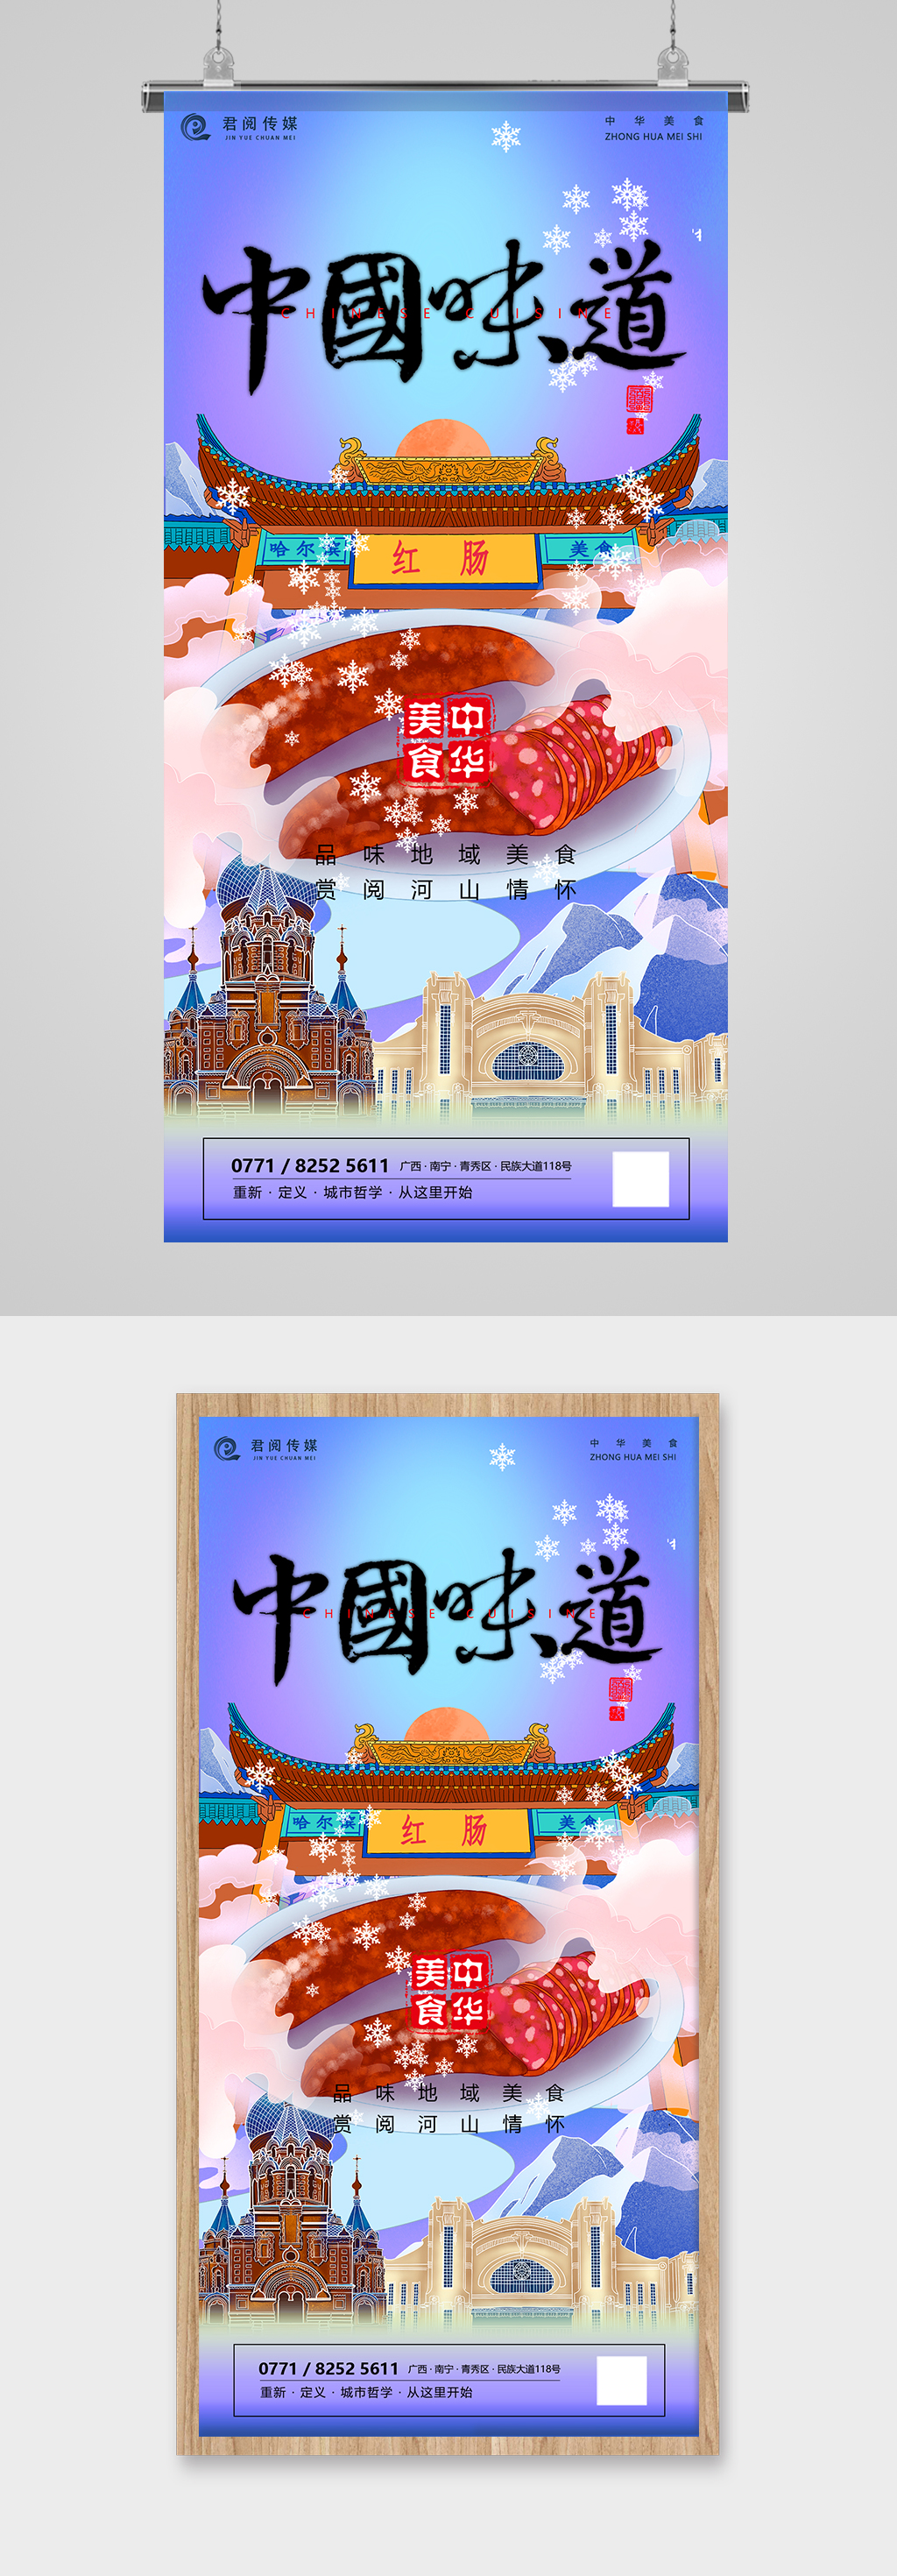 中国美食哈尔滨红肠国潮插画海报